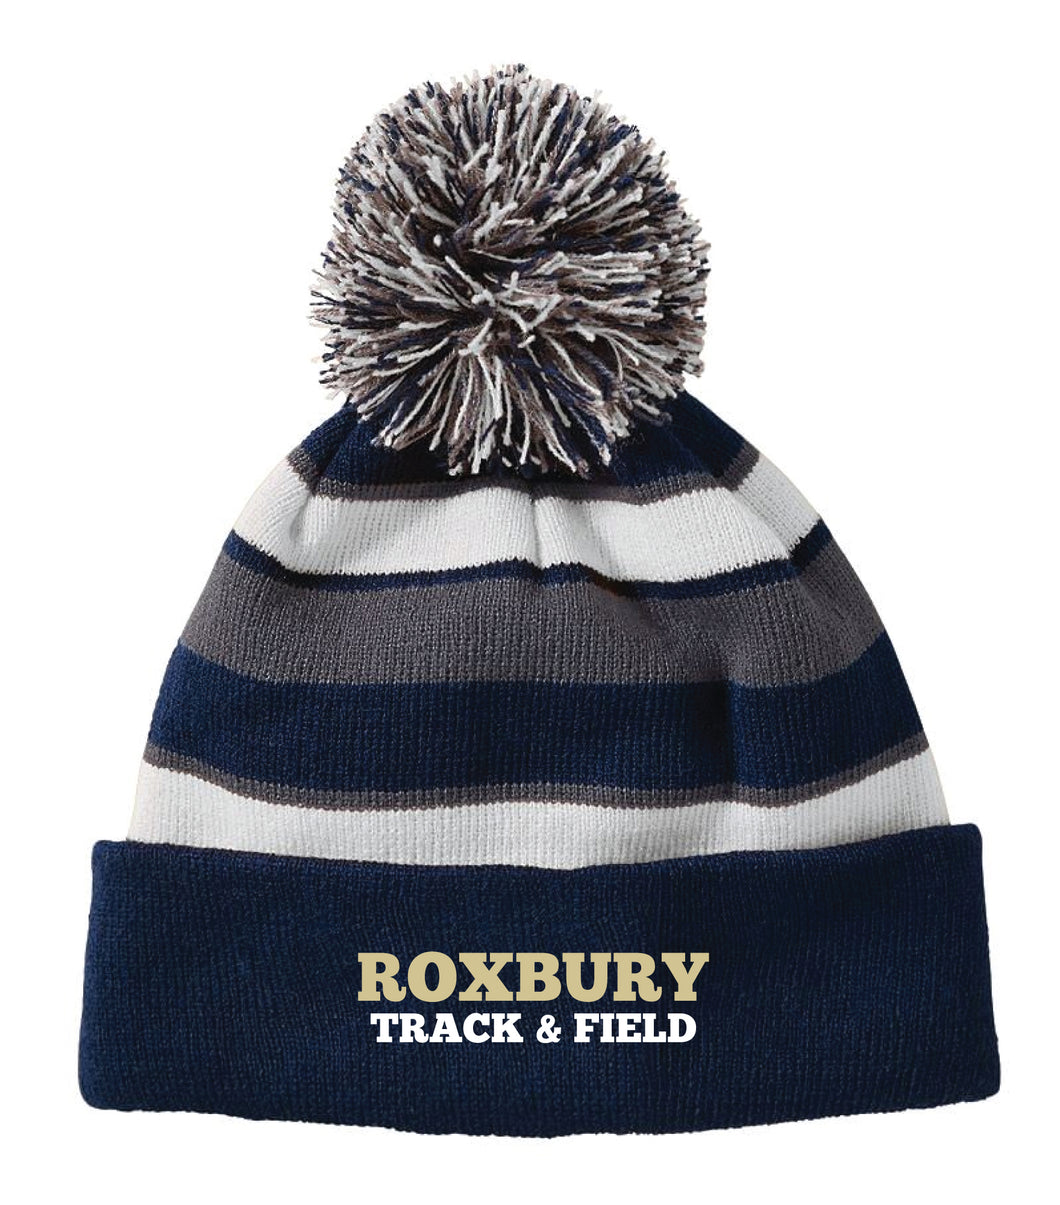 Roxbury Track & Field Pom Beanie - Navy - 5KounT2018